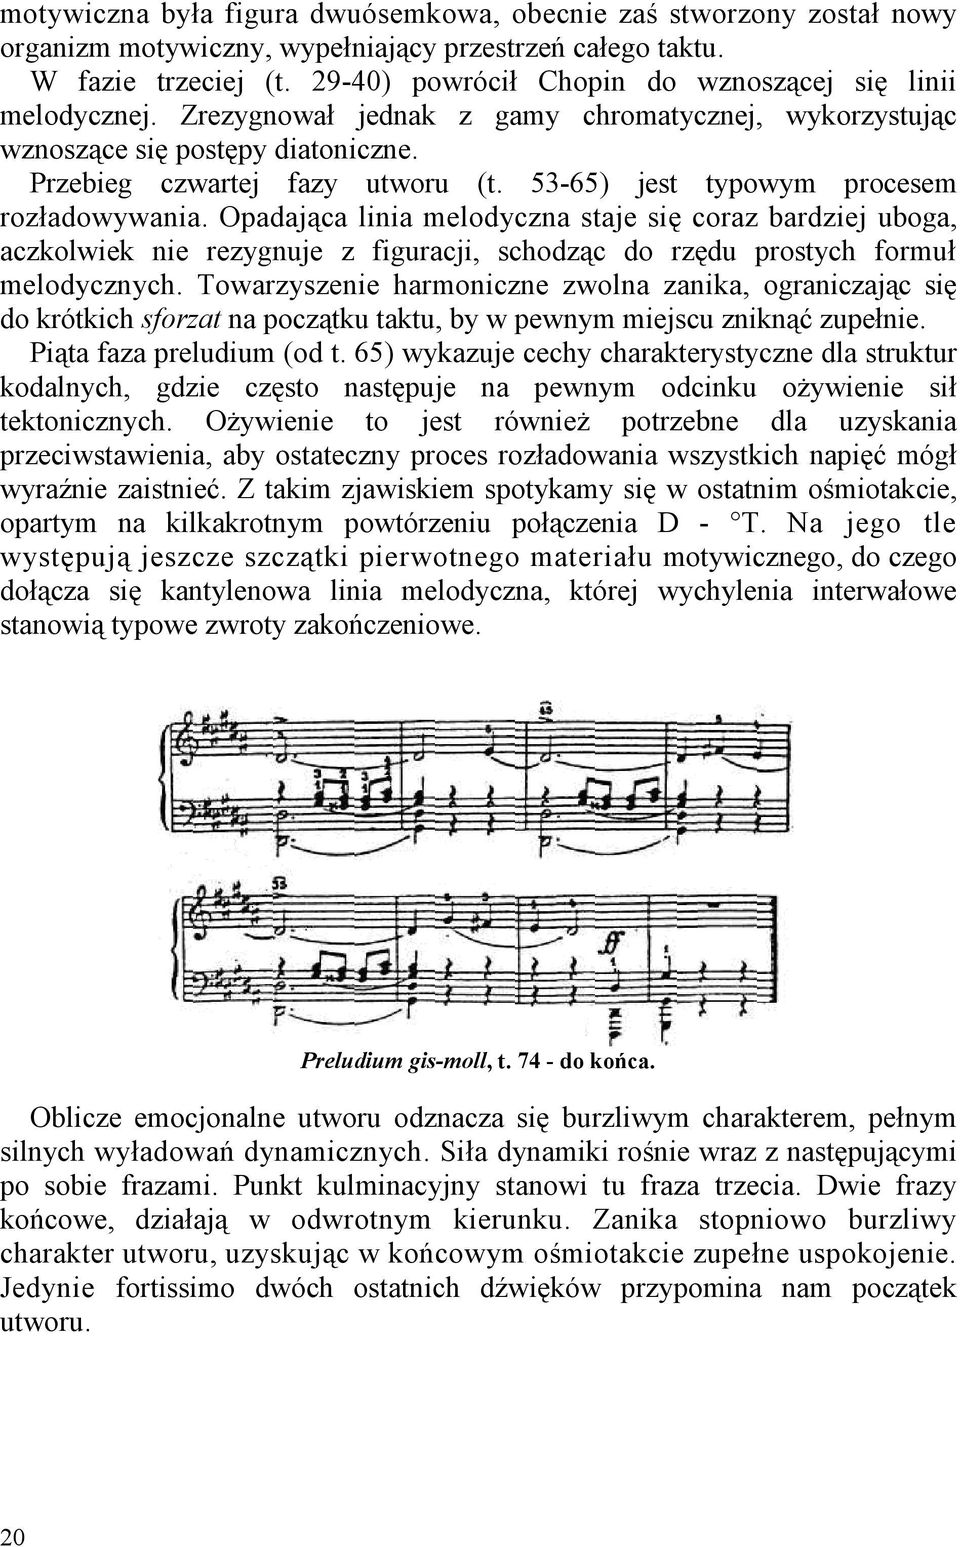 53-65) jest typowym procesem rozładowywania. Opadająca linia melodyczna staje się coraz bardziej uboga, aczkolwiek nie rezygnuje z figuracji, schodząc do rzędu prostych formuł melodycznych.